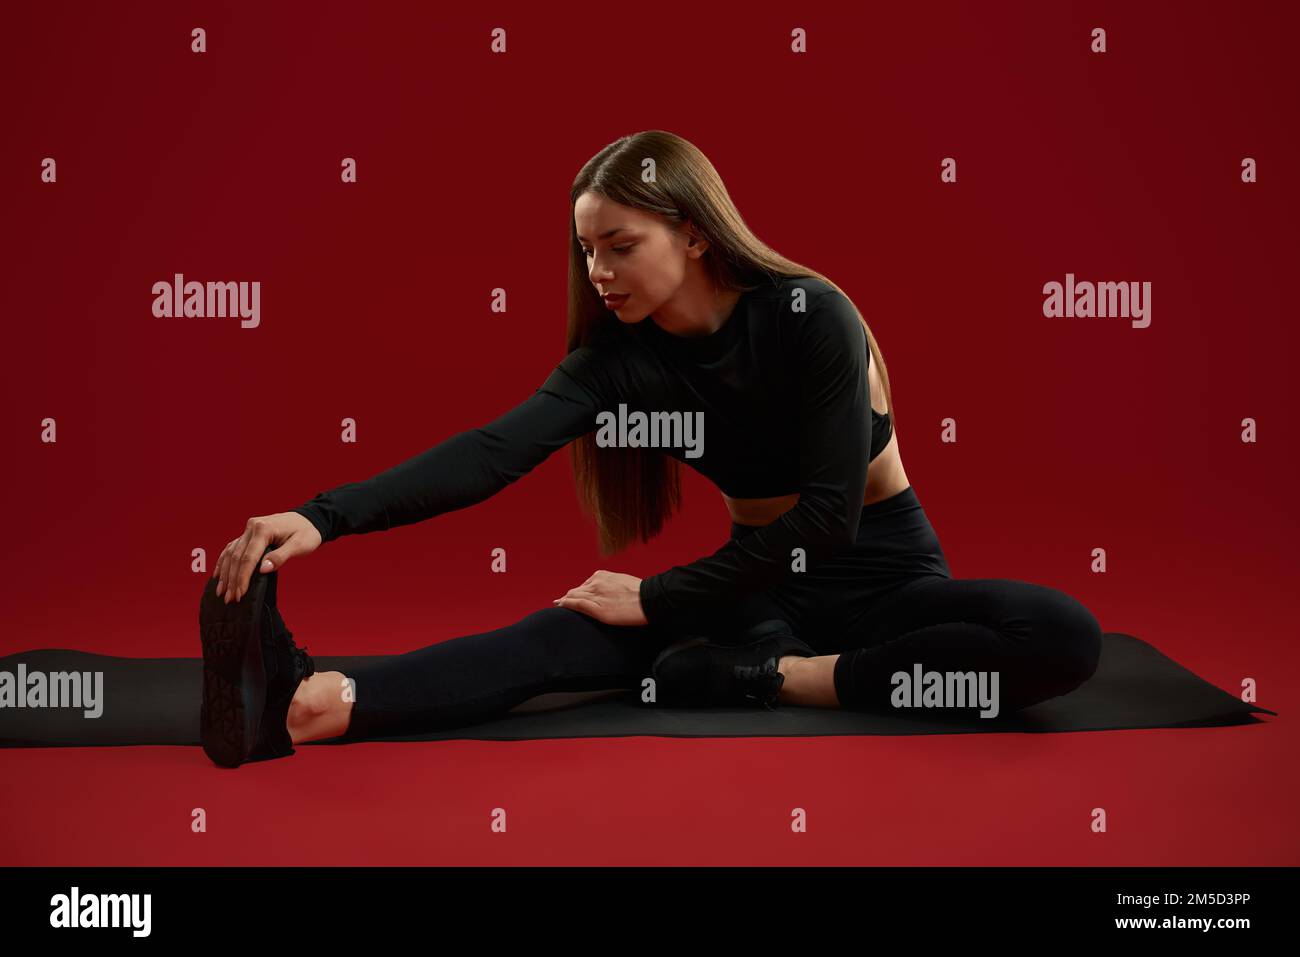 Flexibilität brünette Frau in Schwarz für Stretchübungen an den Beinen und Füße an der Socke ziehen. Ziemlich ernste weibliche Haltung mit Bein in der Seite, Training im roten Studio. Konzept des sportlichen Lebensstils. Stockfoto